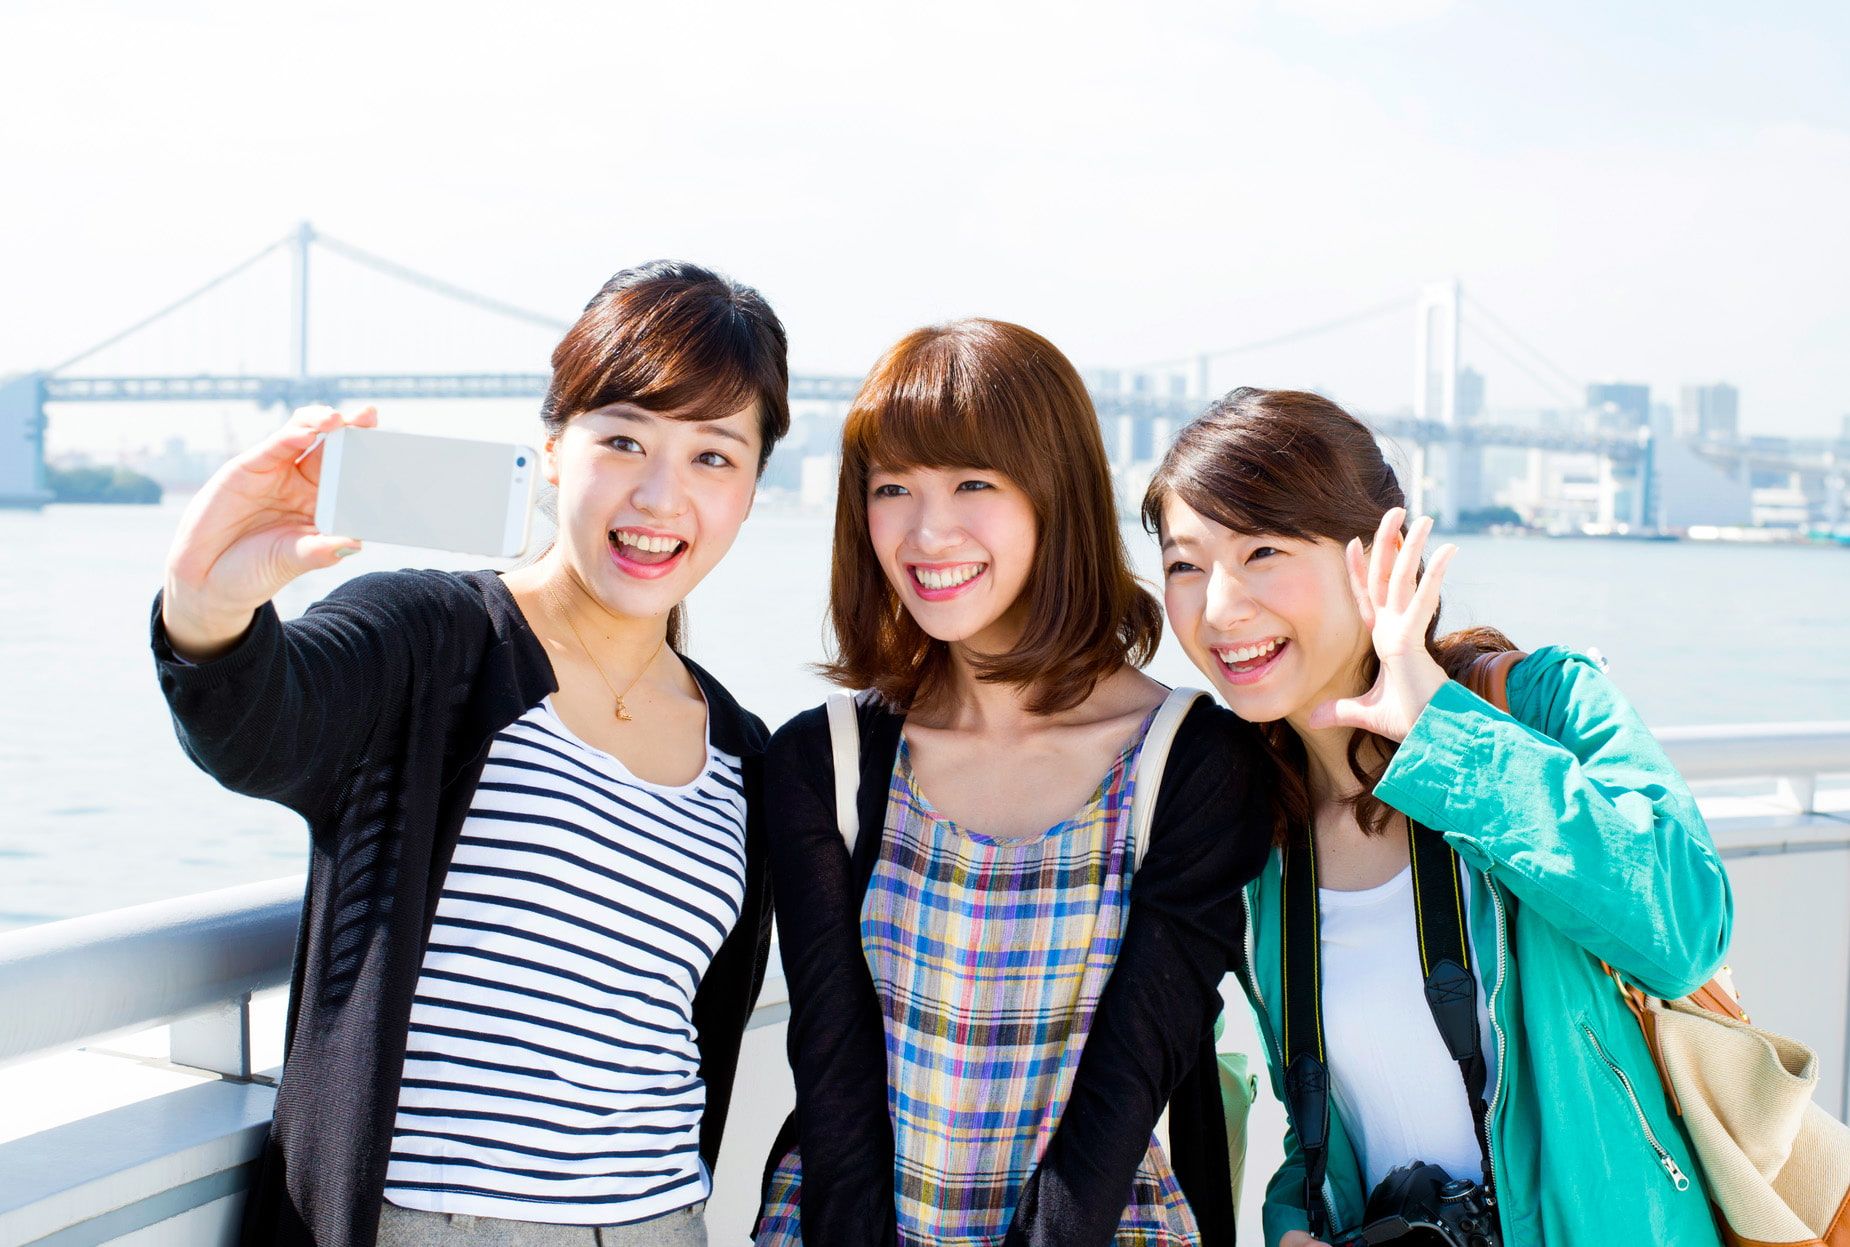 โตเกียว หลักสูตรจำลอง 1 คืน 2 วัน เที่ยวชมมาตรฐาน จุดยอดนิยม โอไดบะ ผู้หญิงถ่ายรูปโดยมีสะพานเรนโบว์เป็นพื้นหลัง ทริปสาวๆ เพลิดเพลินกับการท่องเที่ยวในโตเกียว